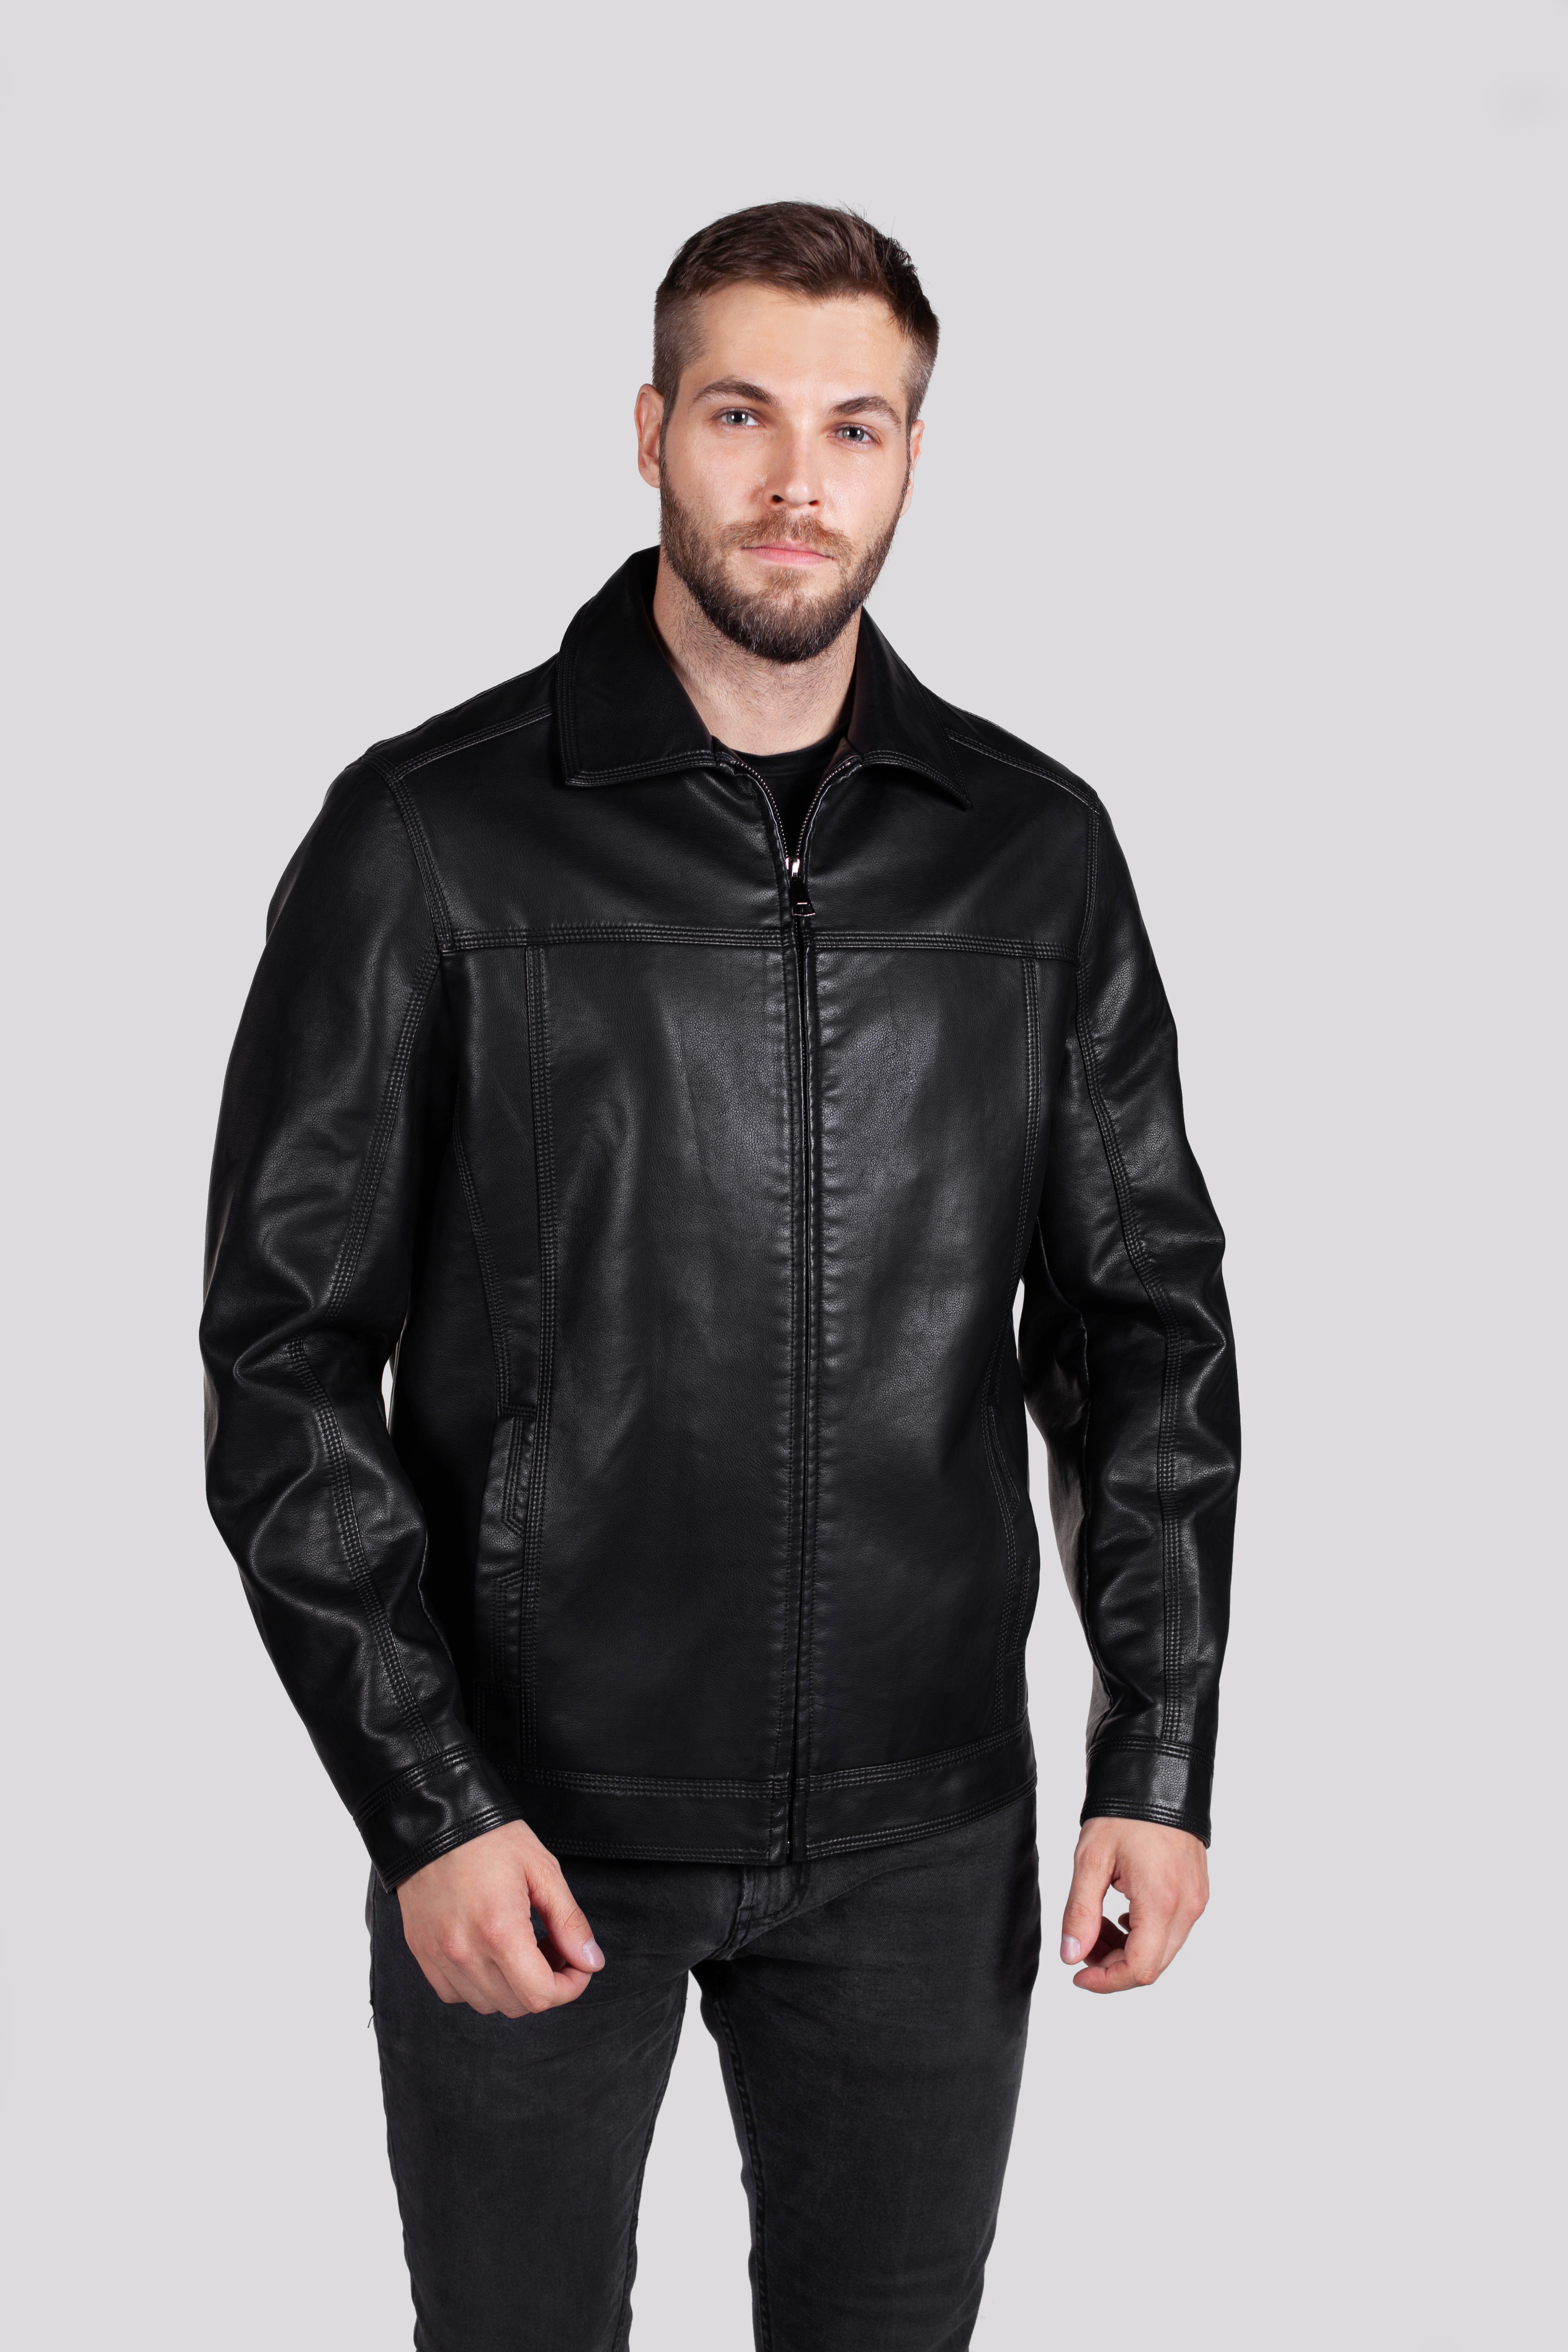 Кожаная куртка мужская RATSKA 631 черная 58 RU